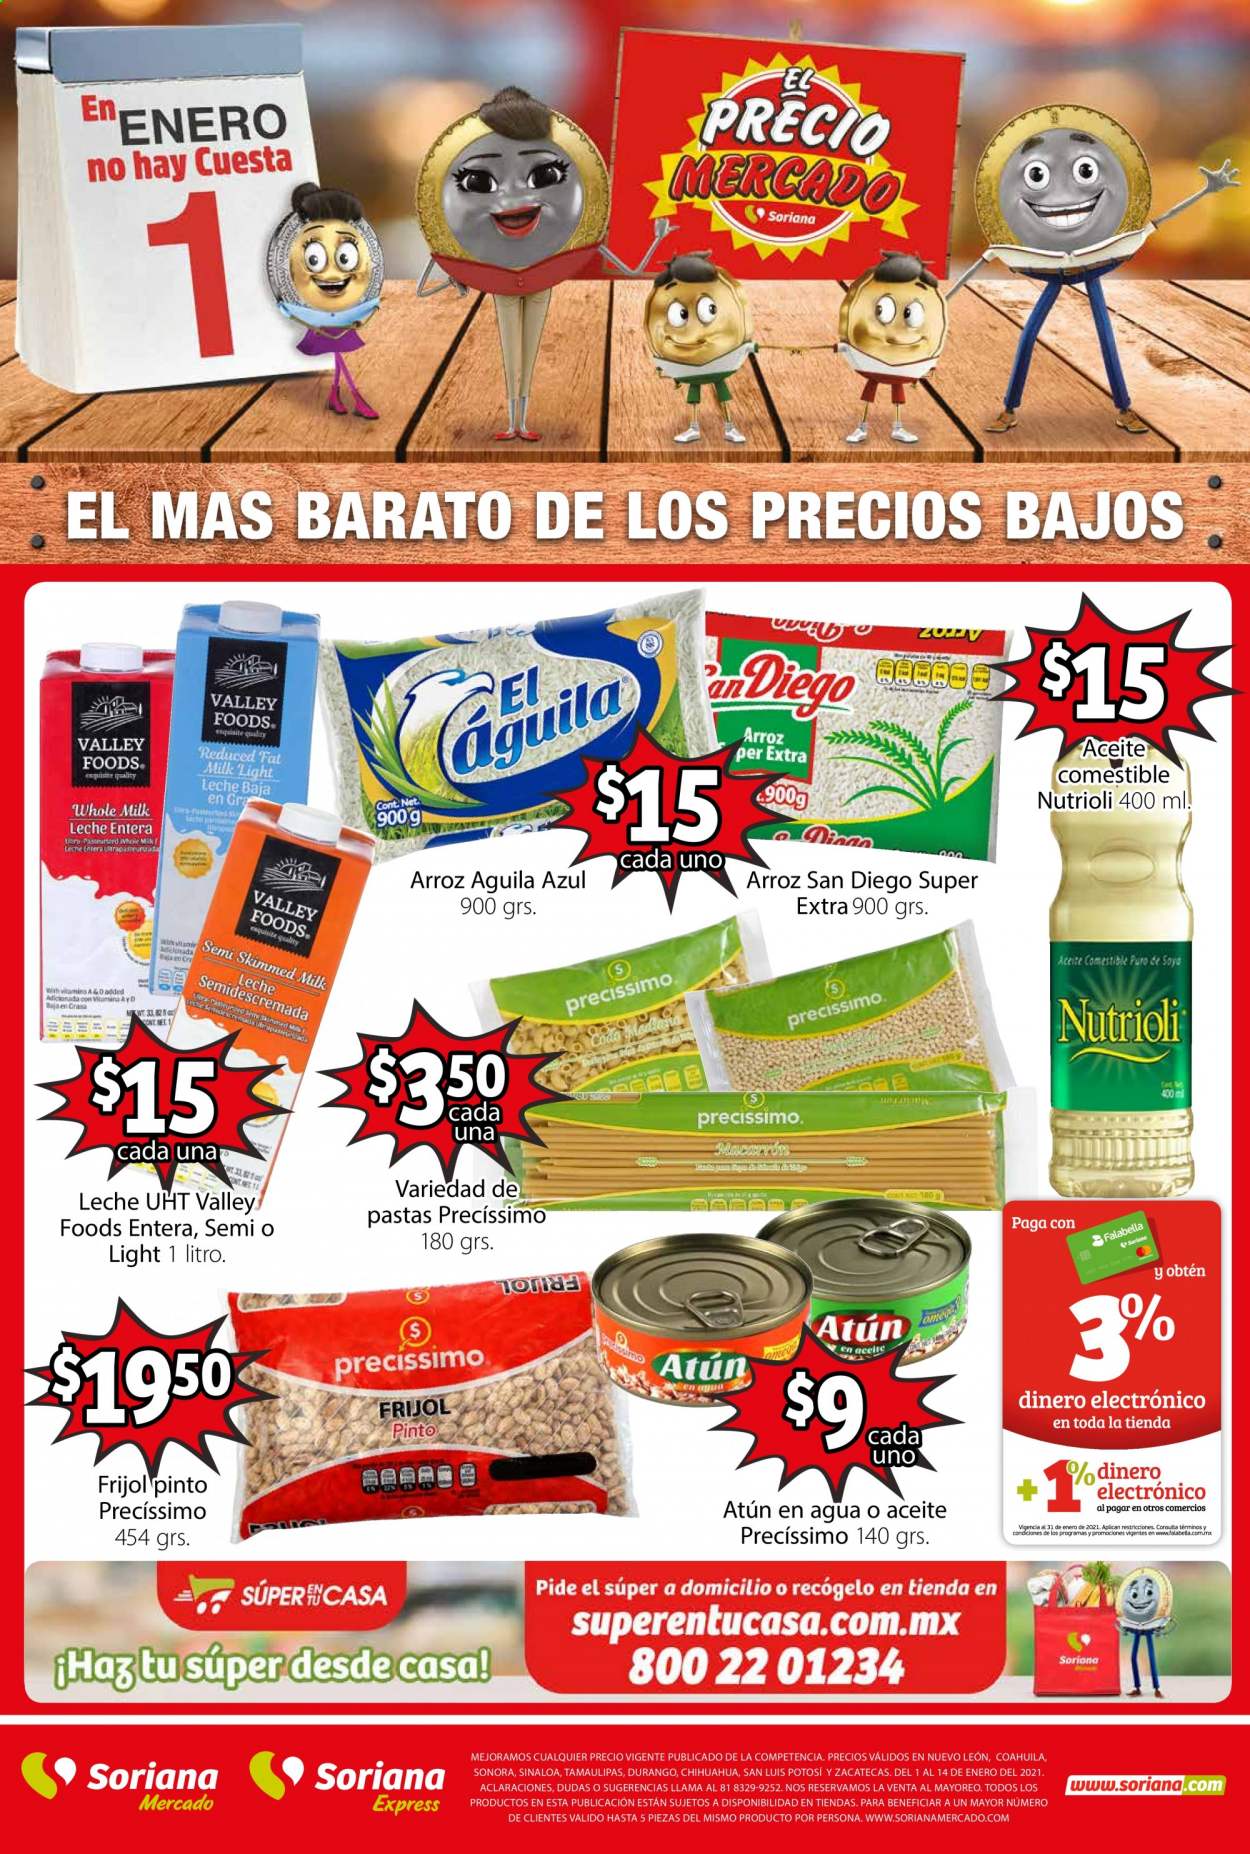 thumbnail - Folleto actual Soriana Mercado - 1.1.2021 - 14.1.2021 - Ventas - frijol, pasta, arroz, Nutrioli. Página 1.